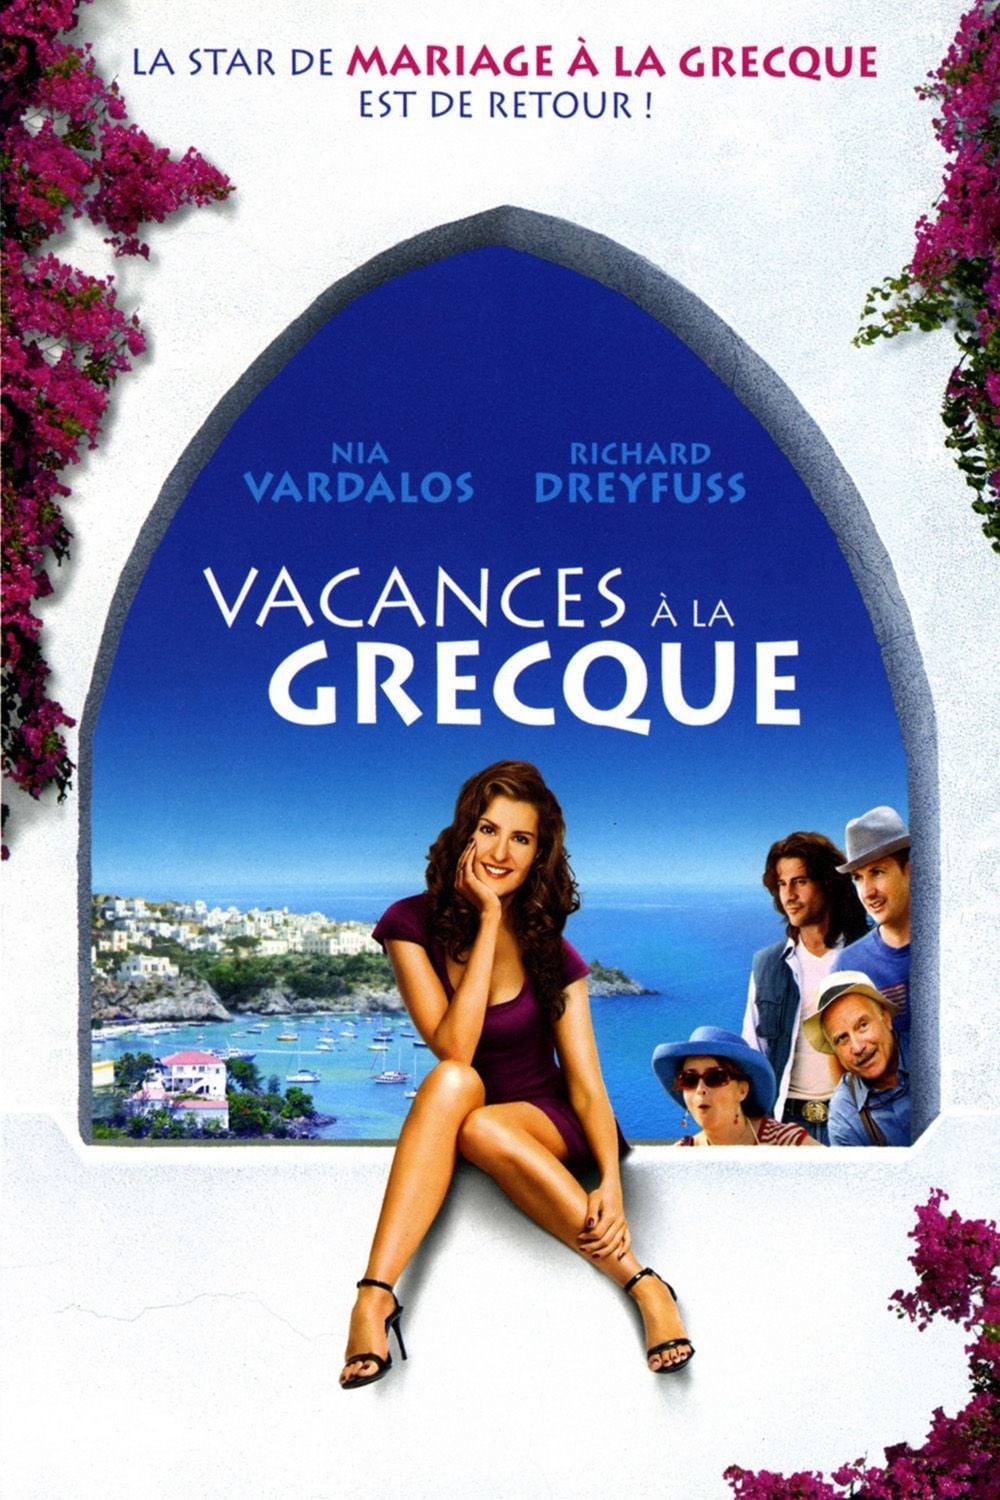 Vacances à la Grecque est-il disponible sur Netflix ou autre ?